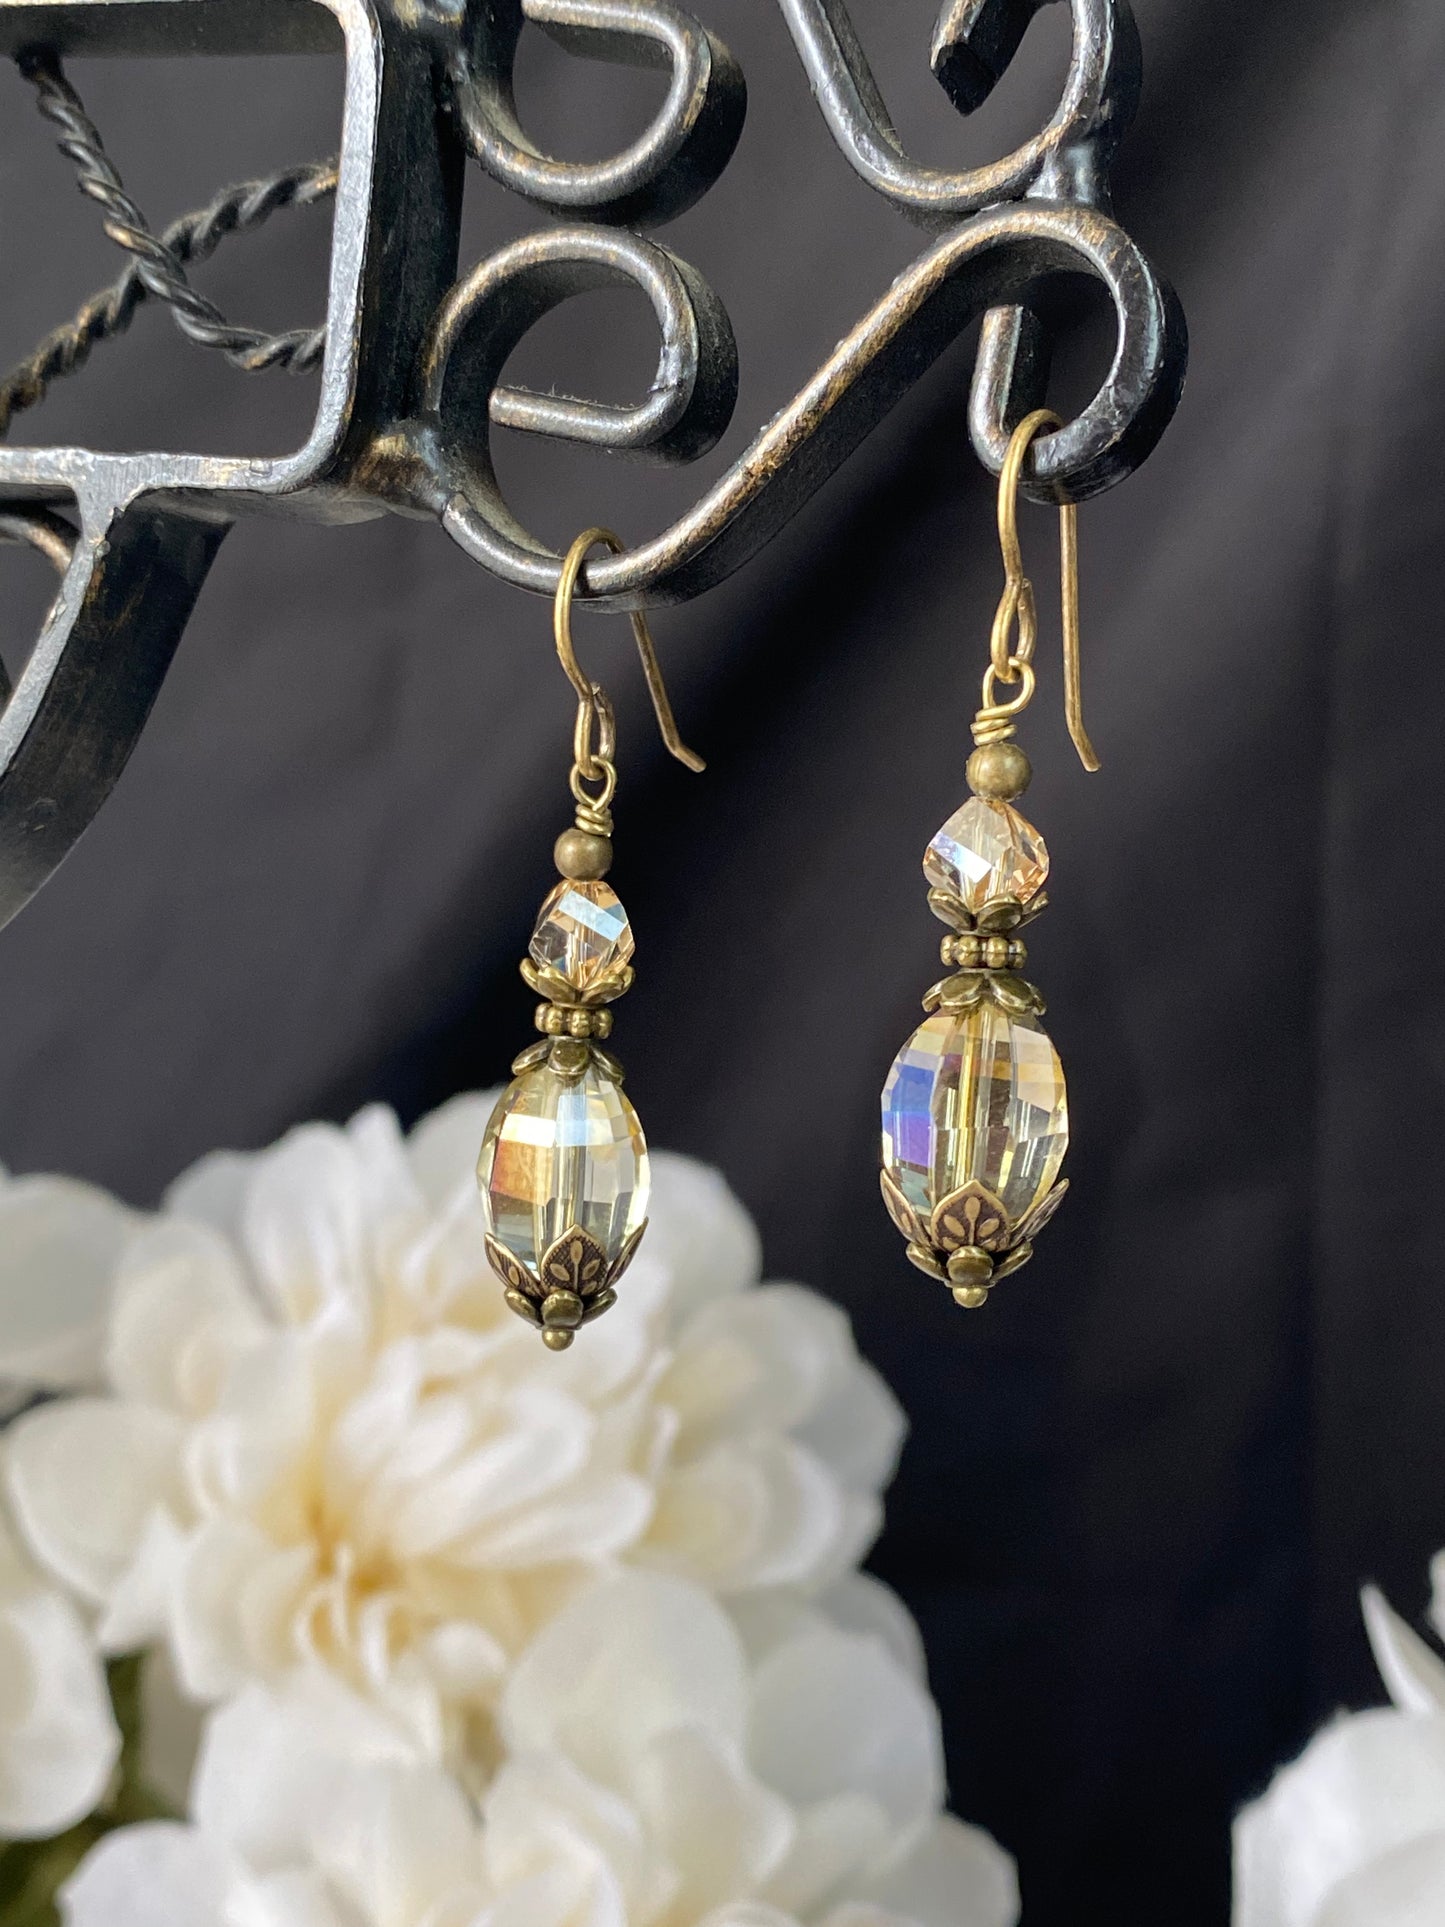 Swarovski crystals, bronze metal findings, earrings